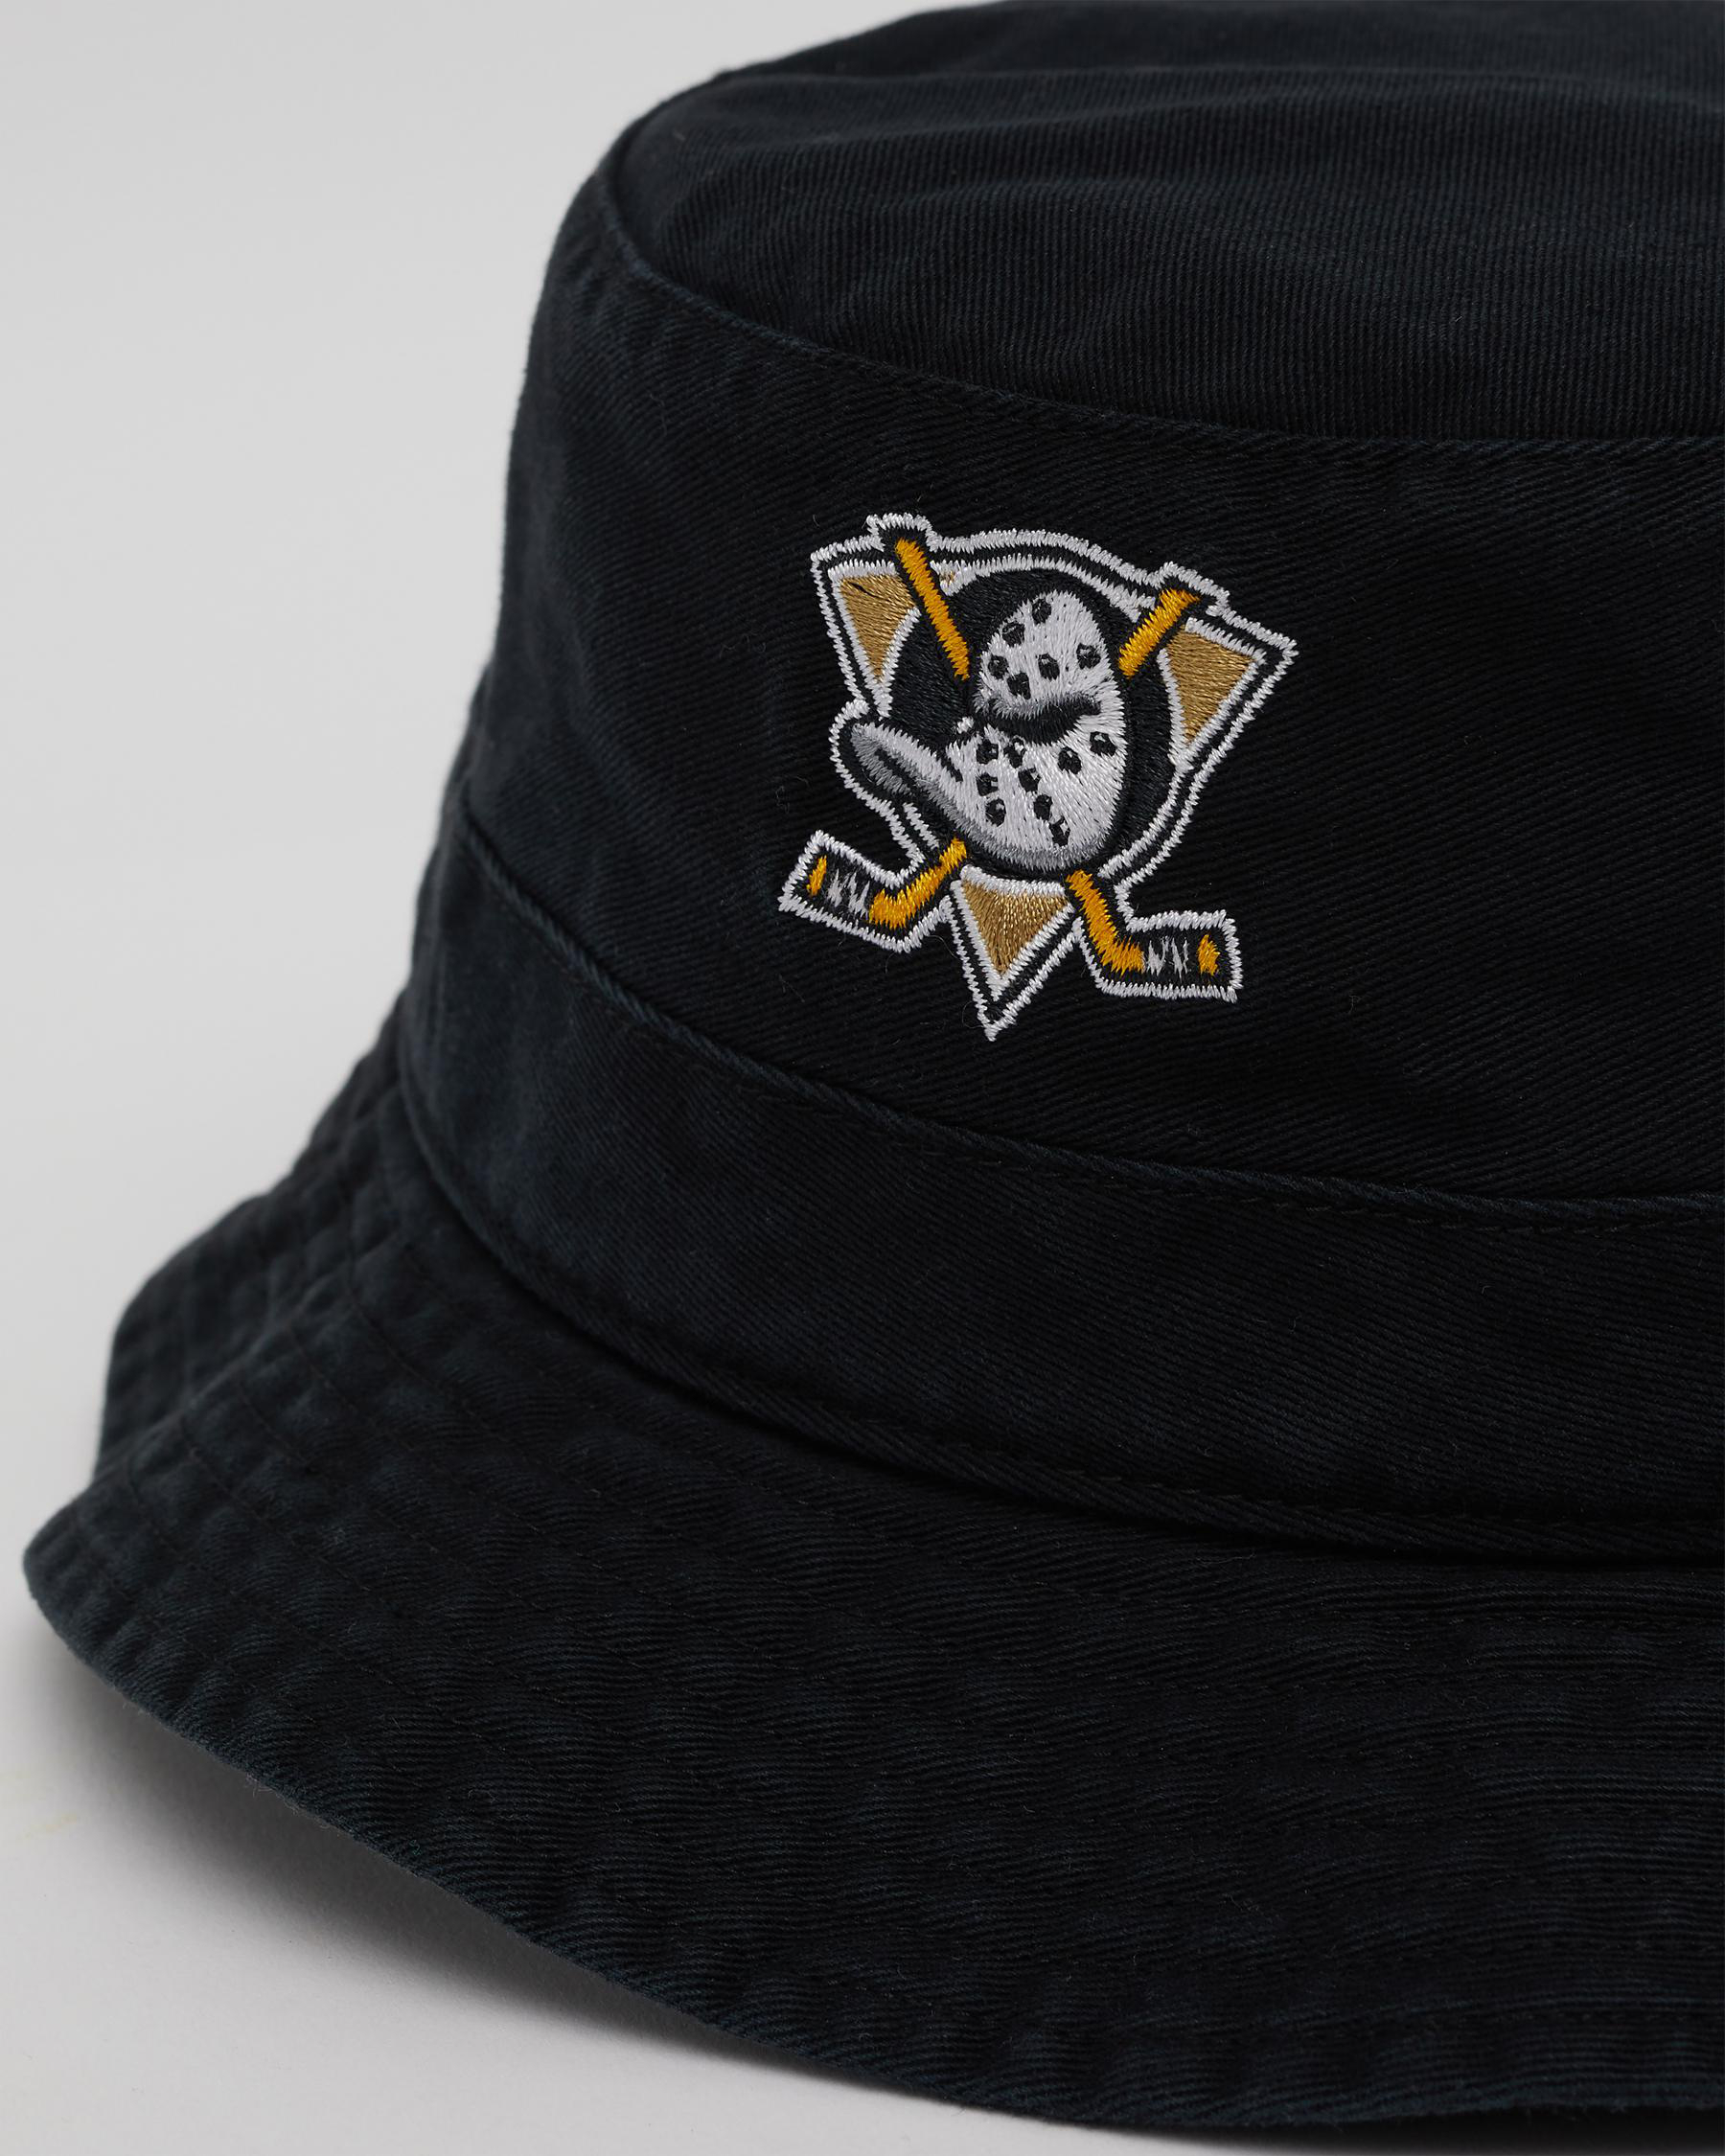 Anaheim Ducks Black '47 Bucket Hat  Shop '47 Lifestyle Hats & Caps – '47  Brand